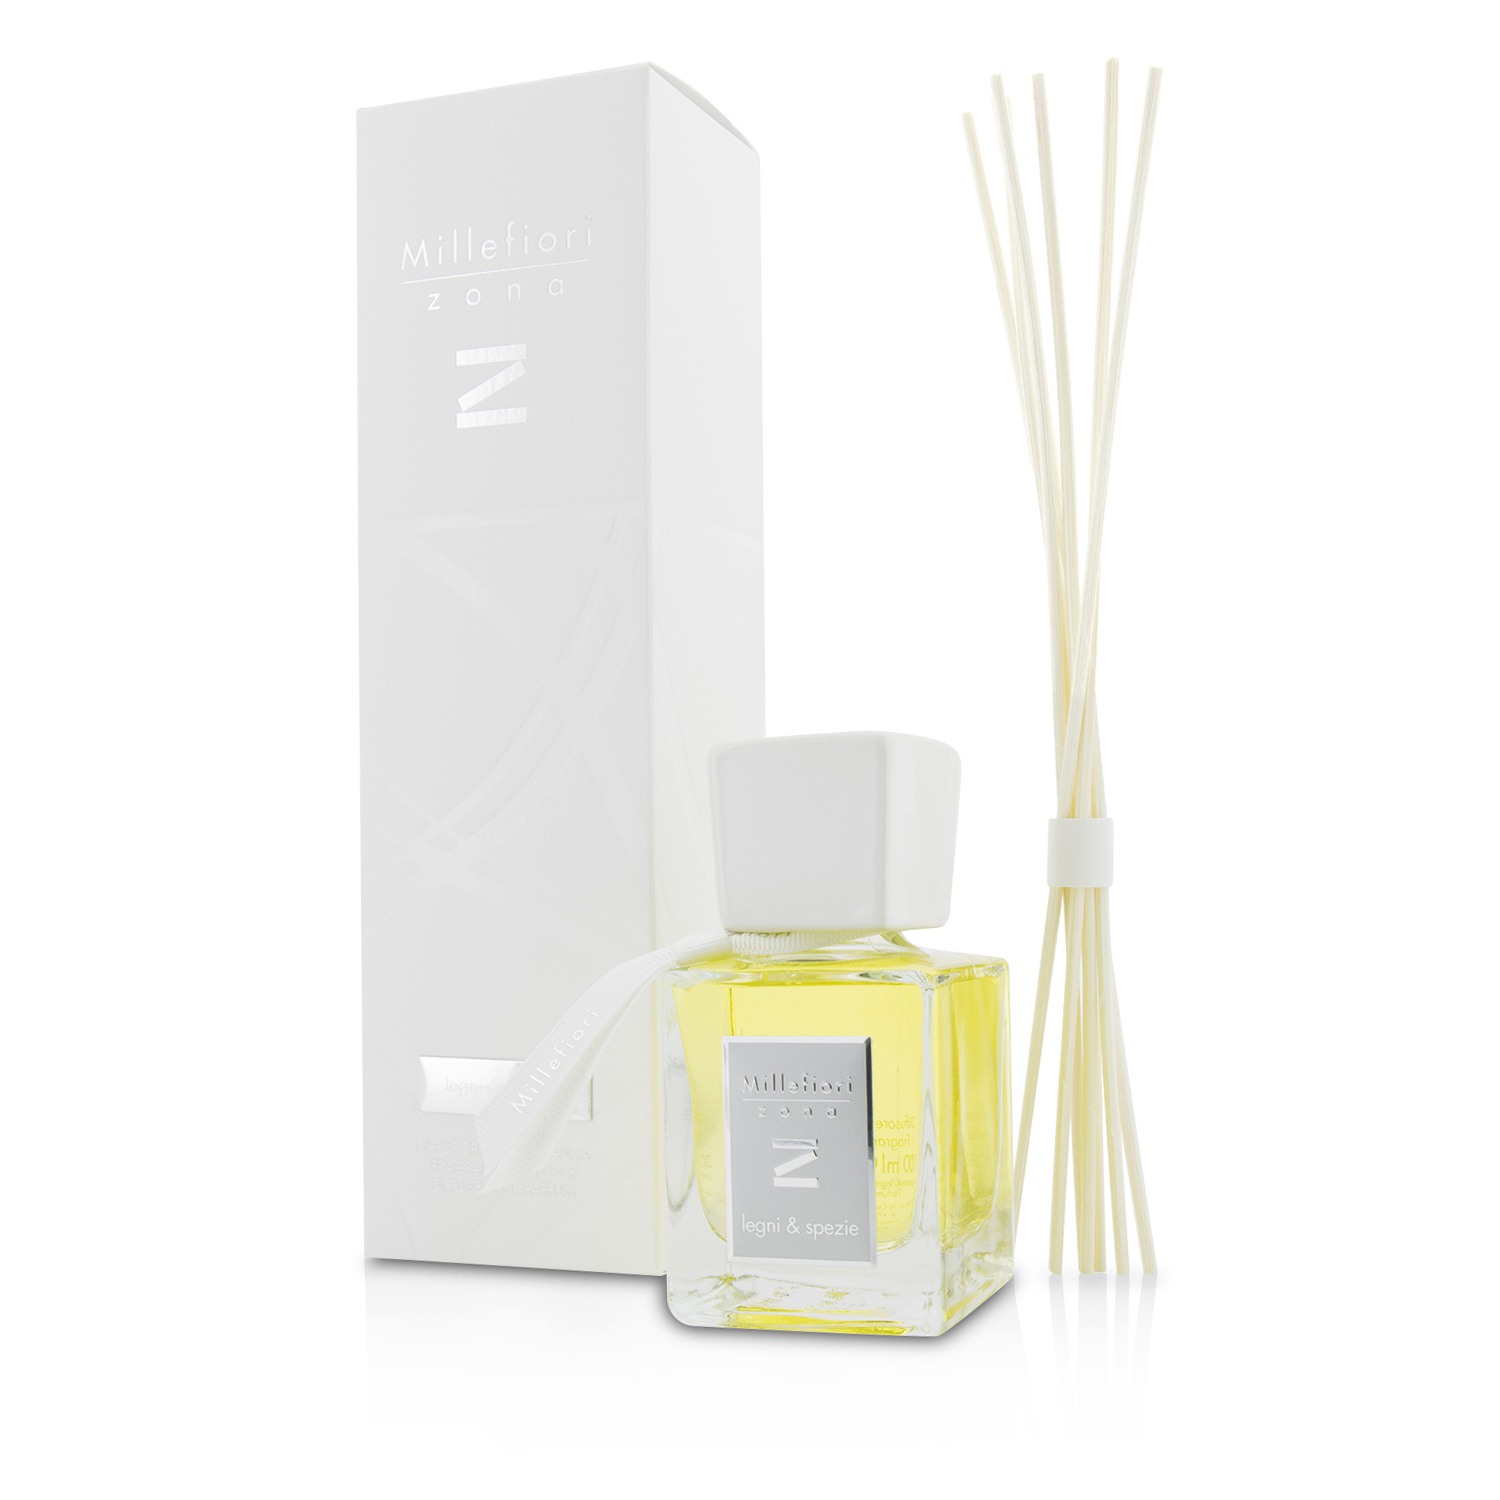 Zona Fragrance Diffuser - Legni E Spezie (New Packaging) Millefiori Image